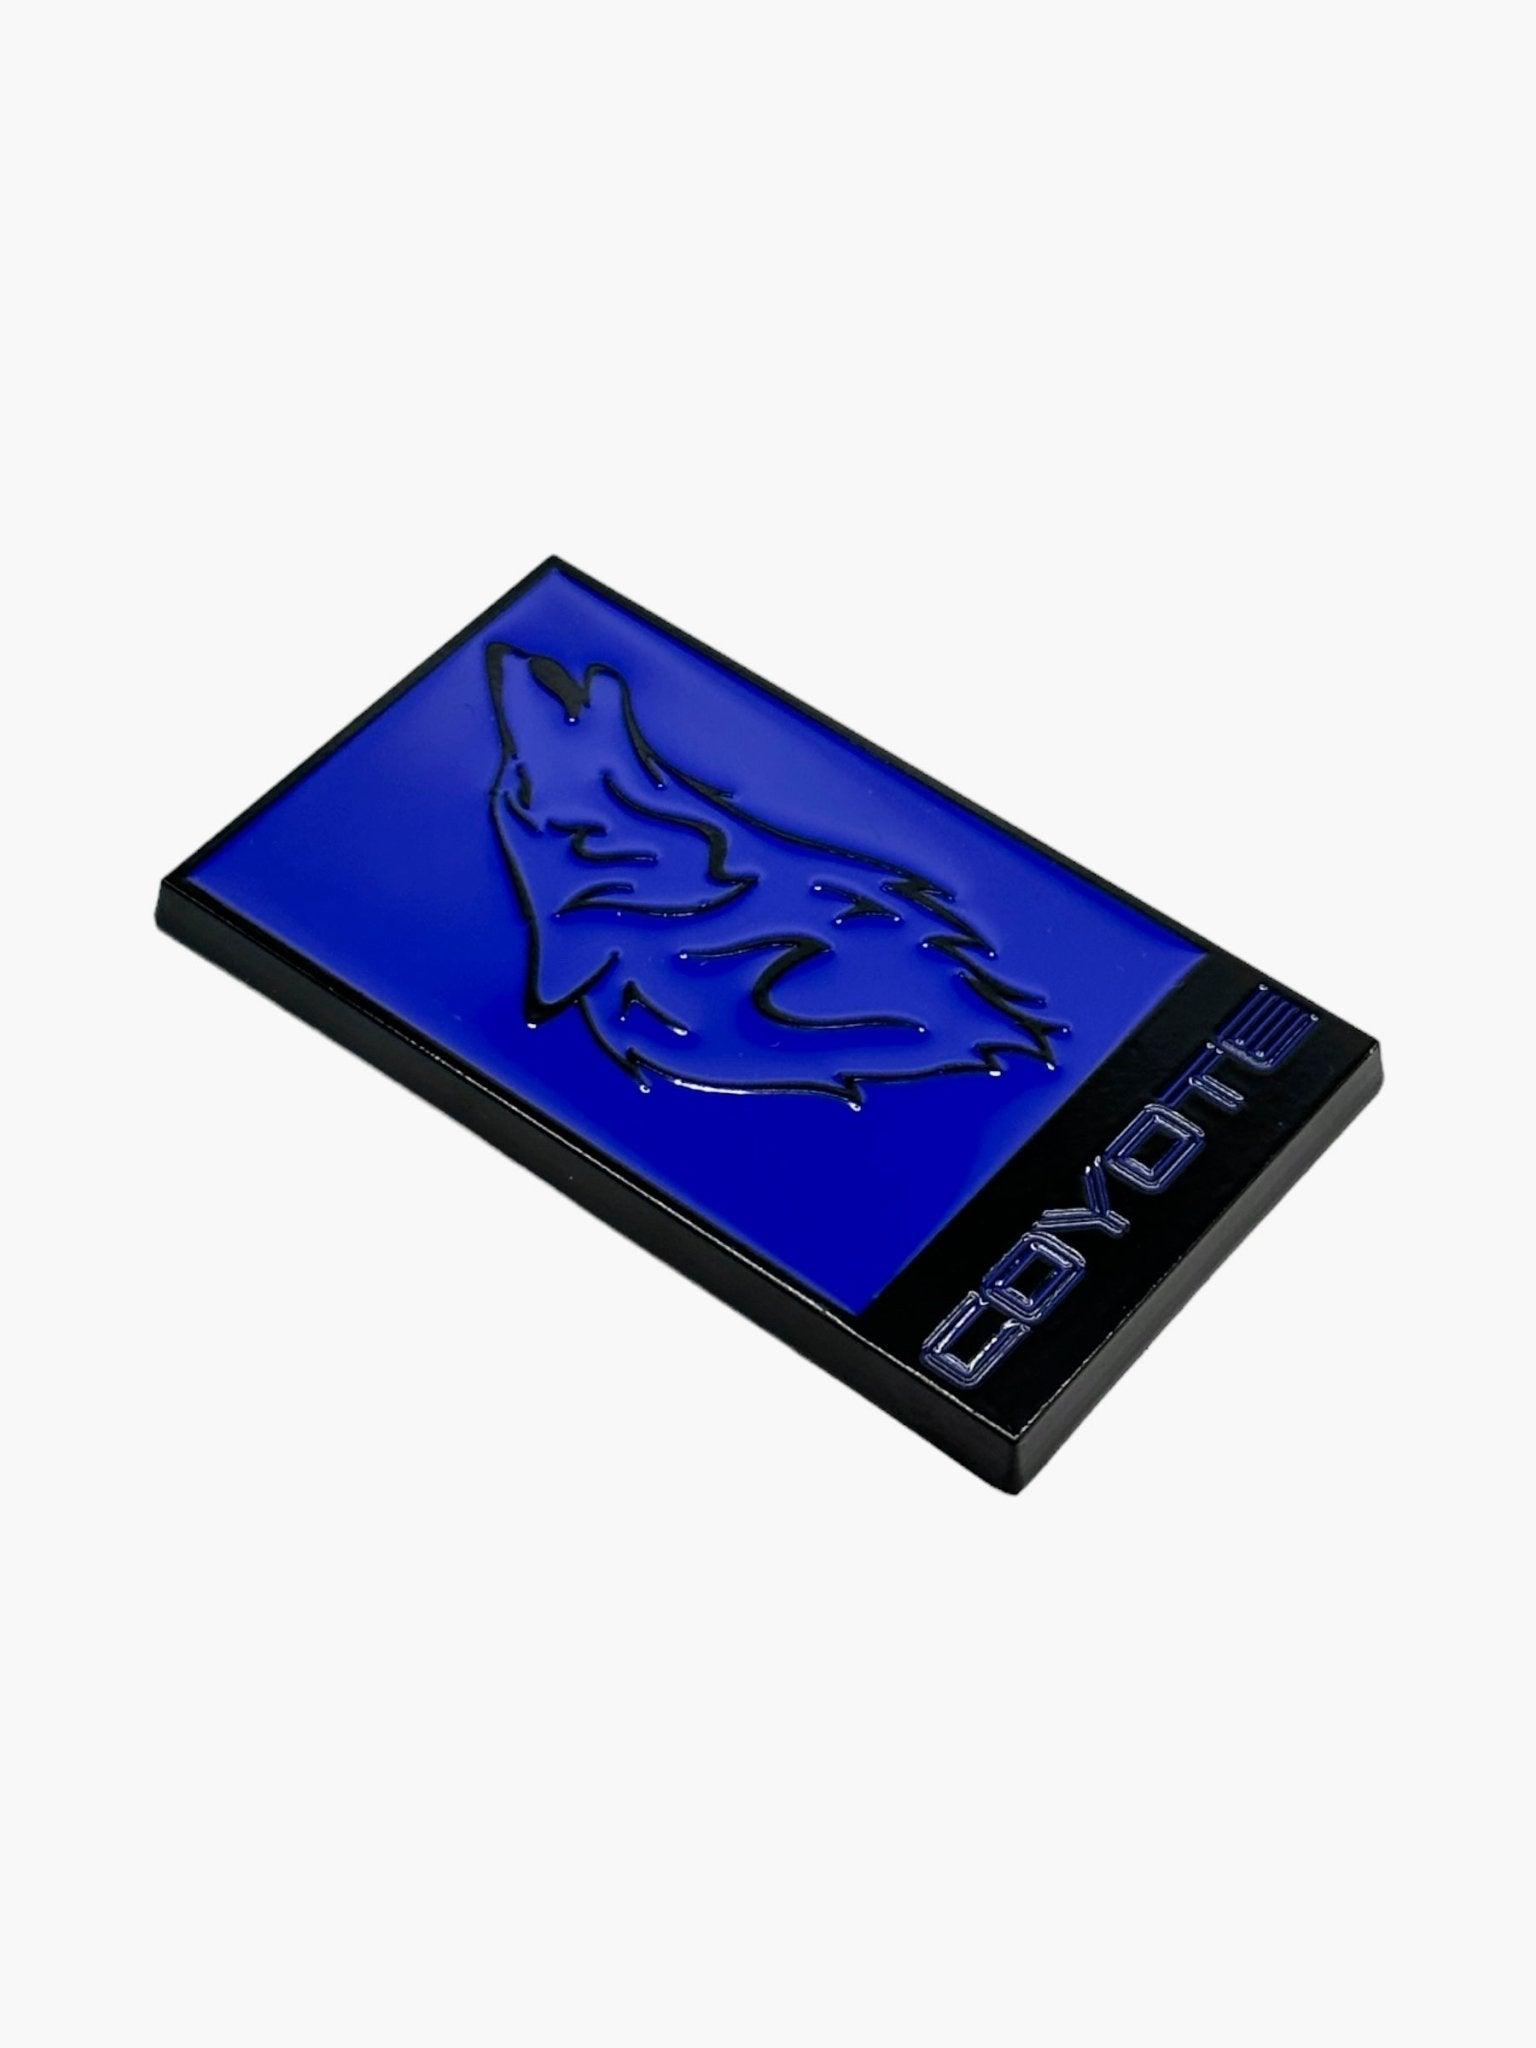 Grill Badge or Decklid Coyote V2 logo Emblem S550 Mustang GT - Gem Motorsports